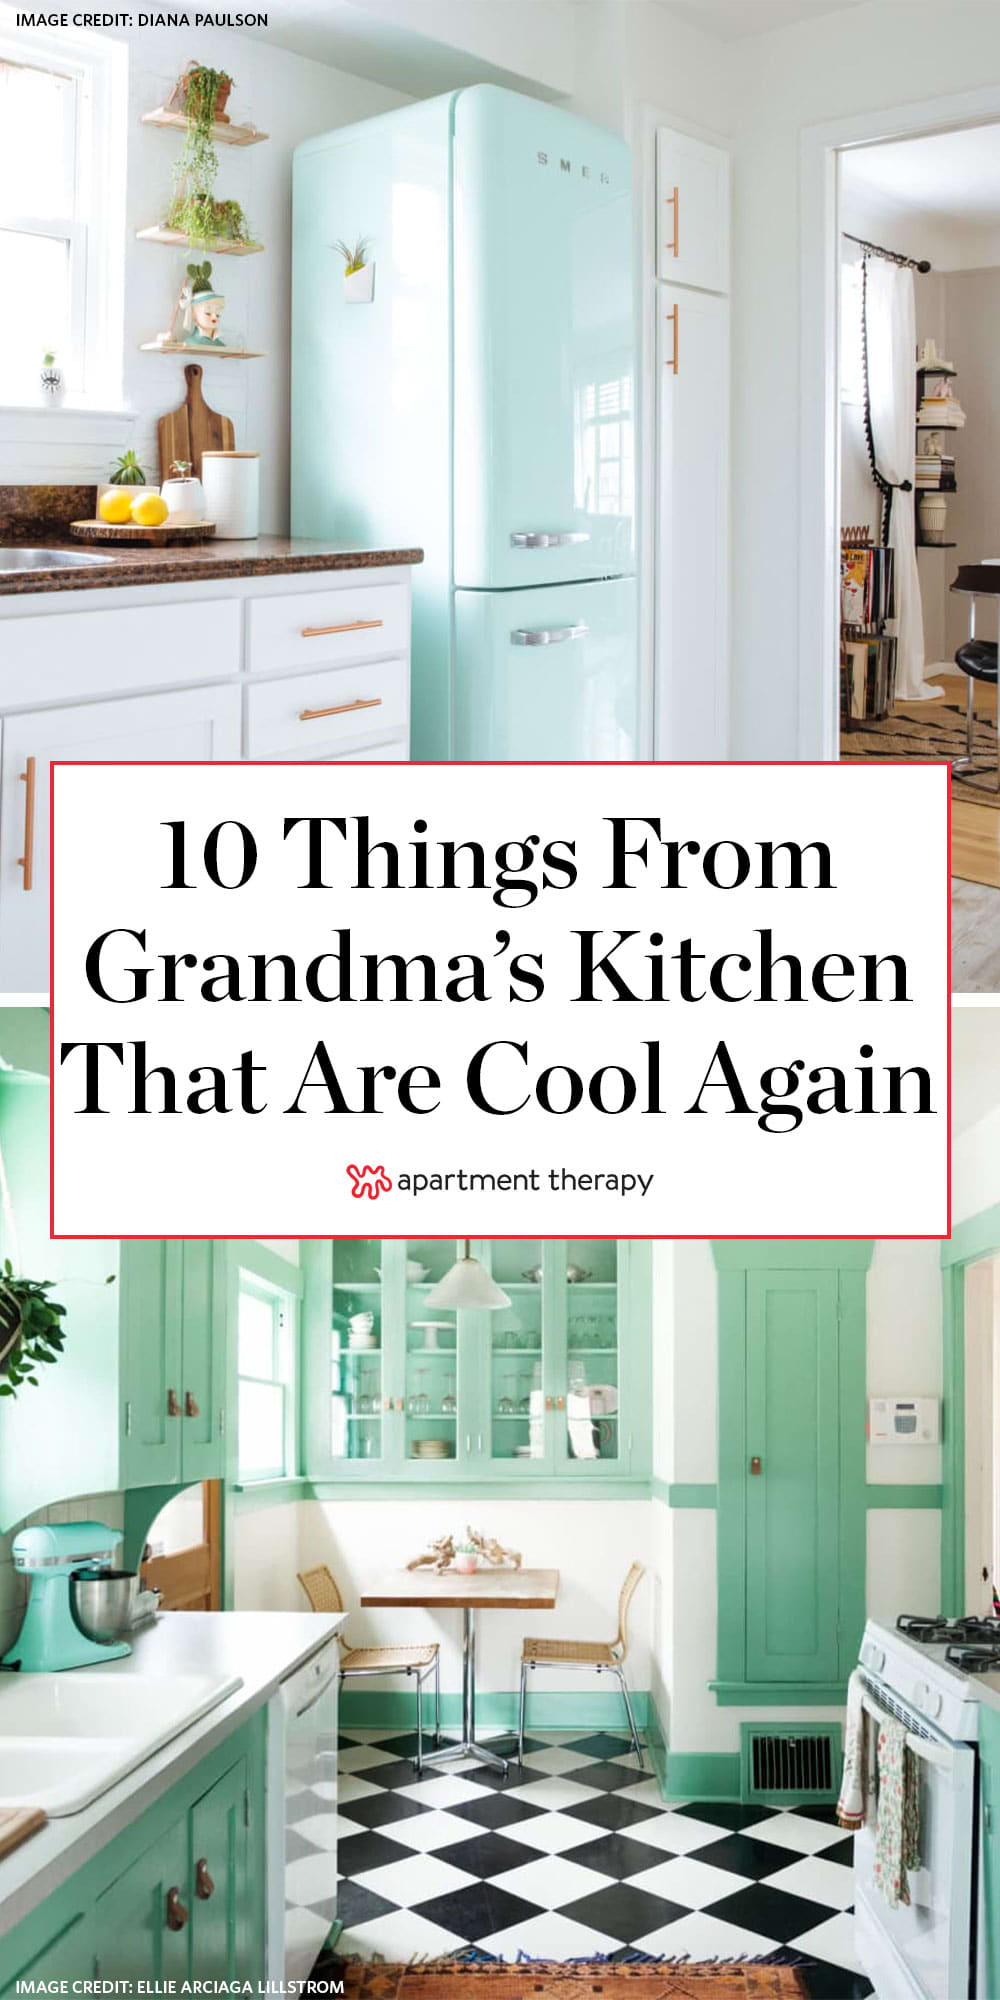 Folio: grandma's kitchen - Architectural Review